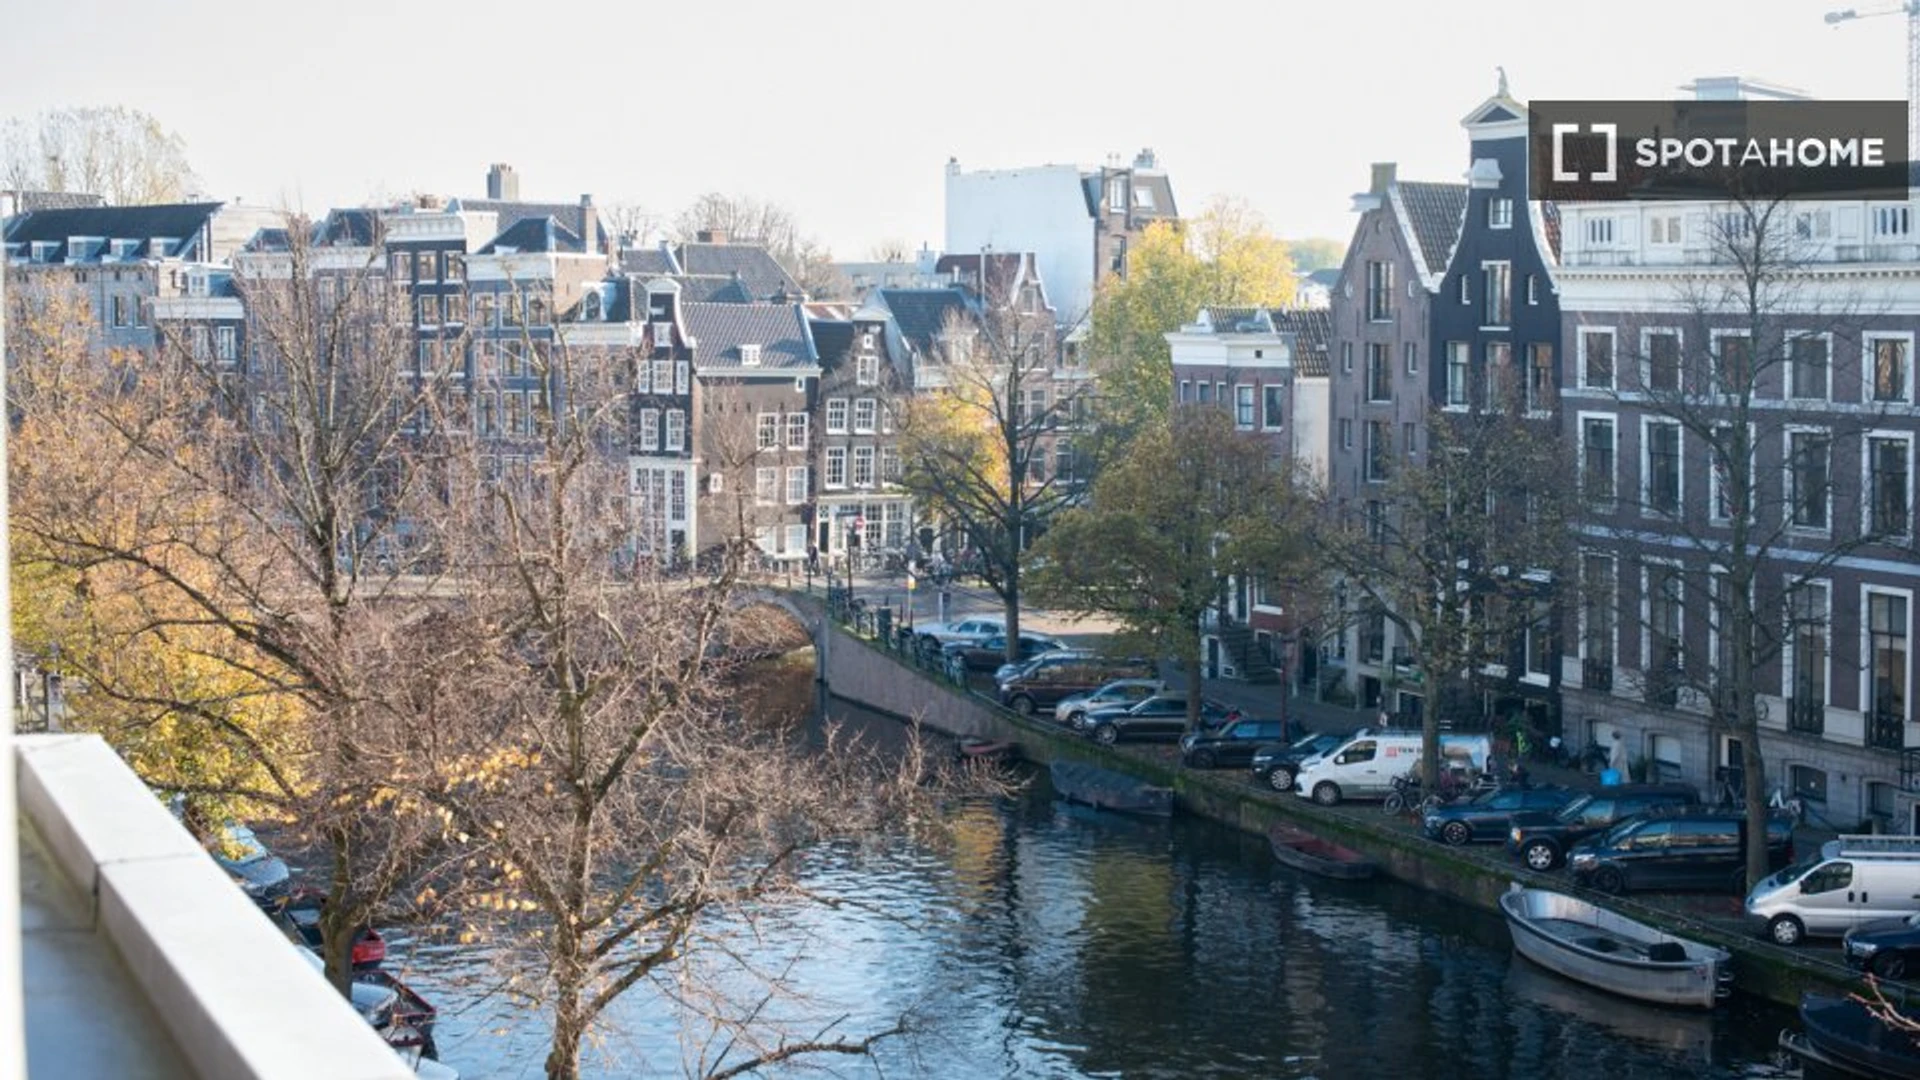 Apartamento moderno e brilhante em Amesterdão